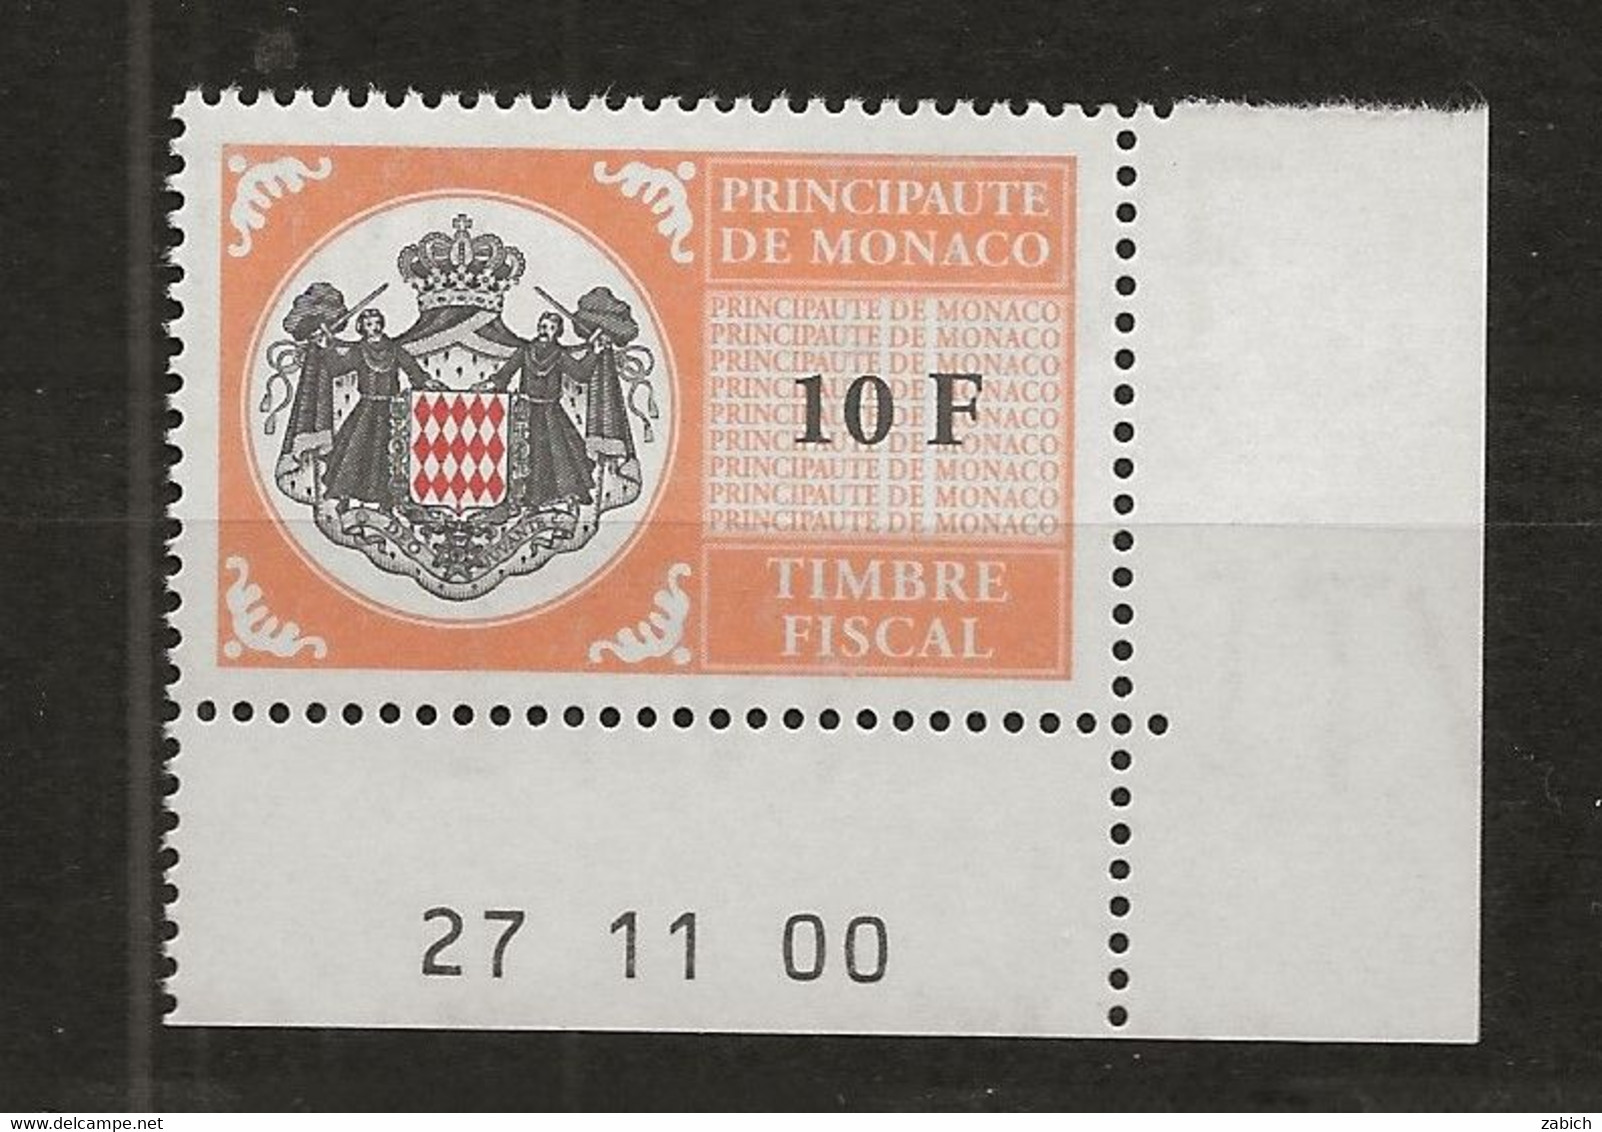 TIMBRES FISCAUX DE MONACO SERIE UNIFIEE N°102 10F Orange  Coin Daté Du 27 11 00 Neuf Gomme Mnh (**) - Fiscales